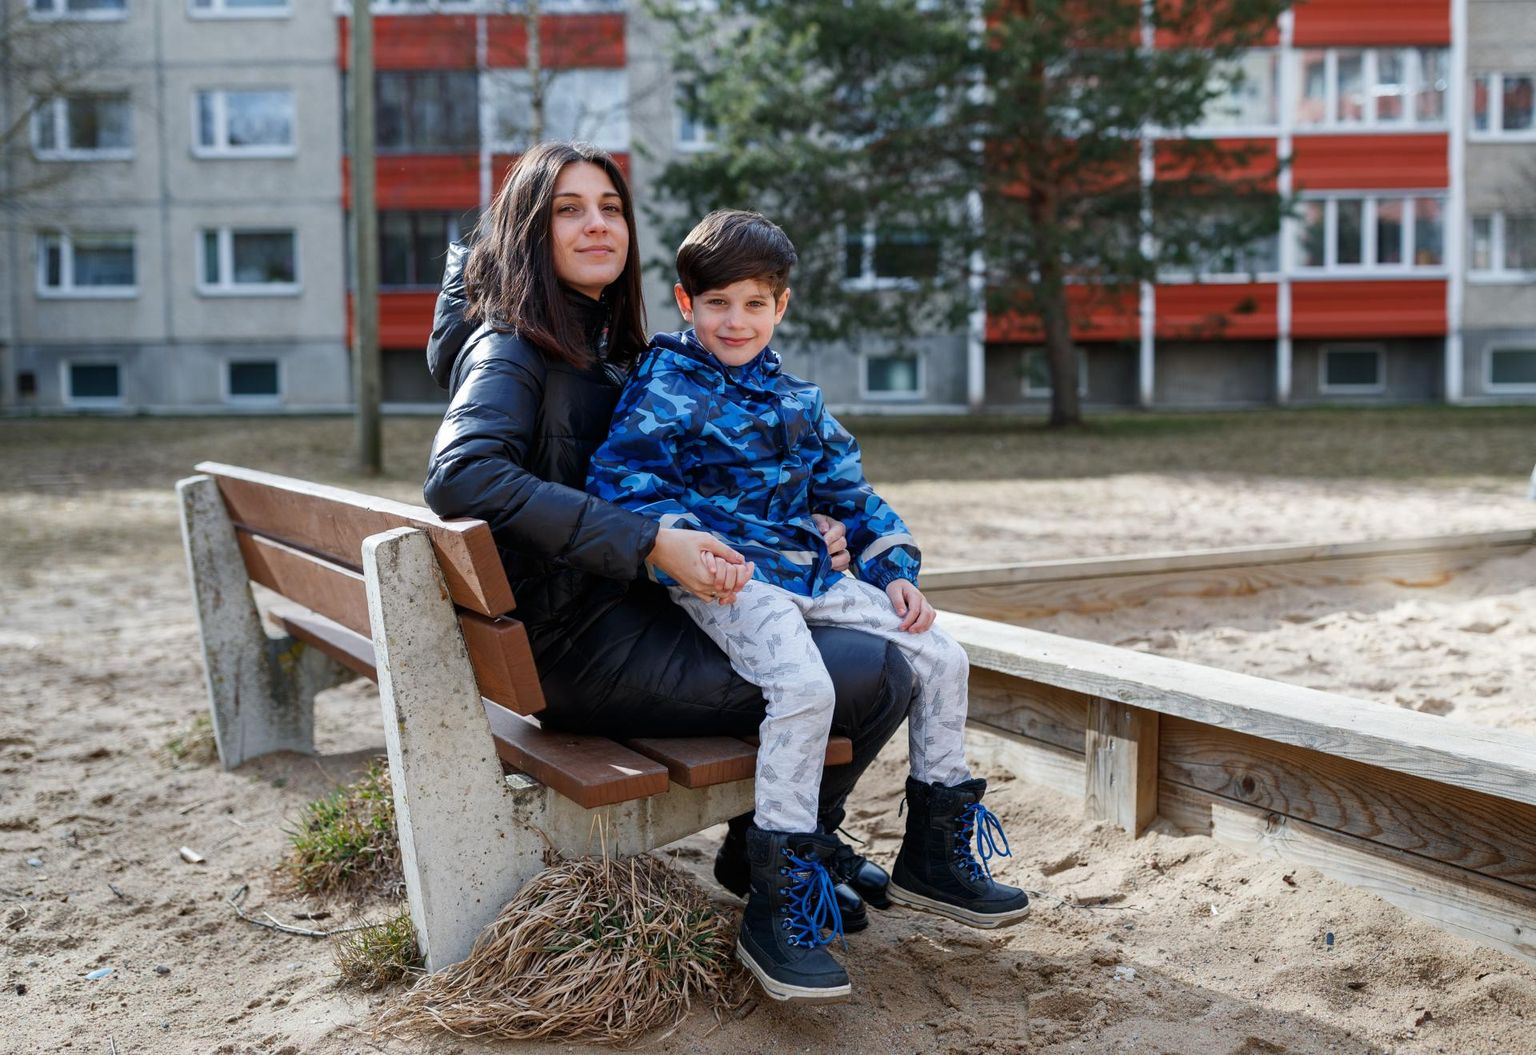 Мать Ирины сказала ей, что она должна уехать из Украины из-за Платона, чтобы мальчик мог расти в безопасном месте.